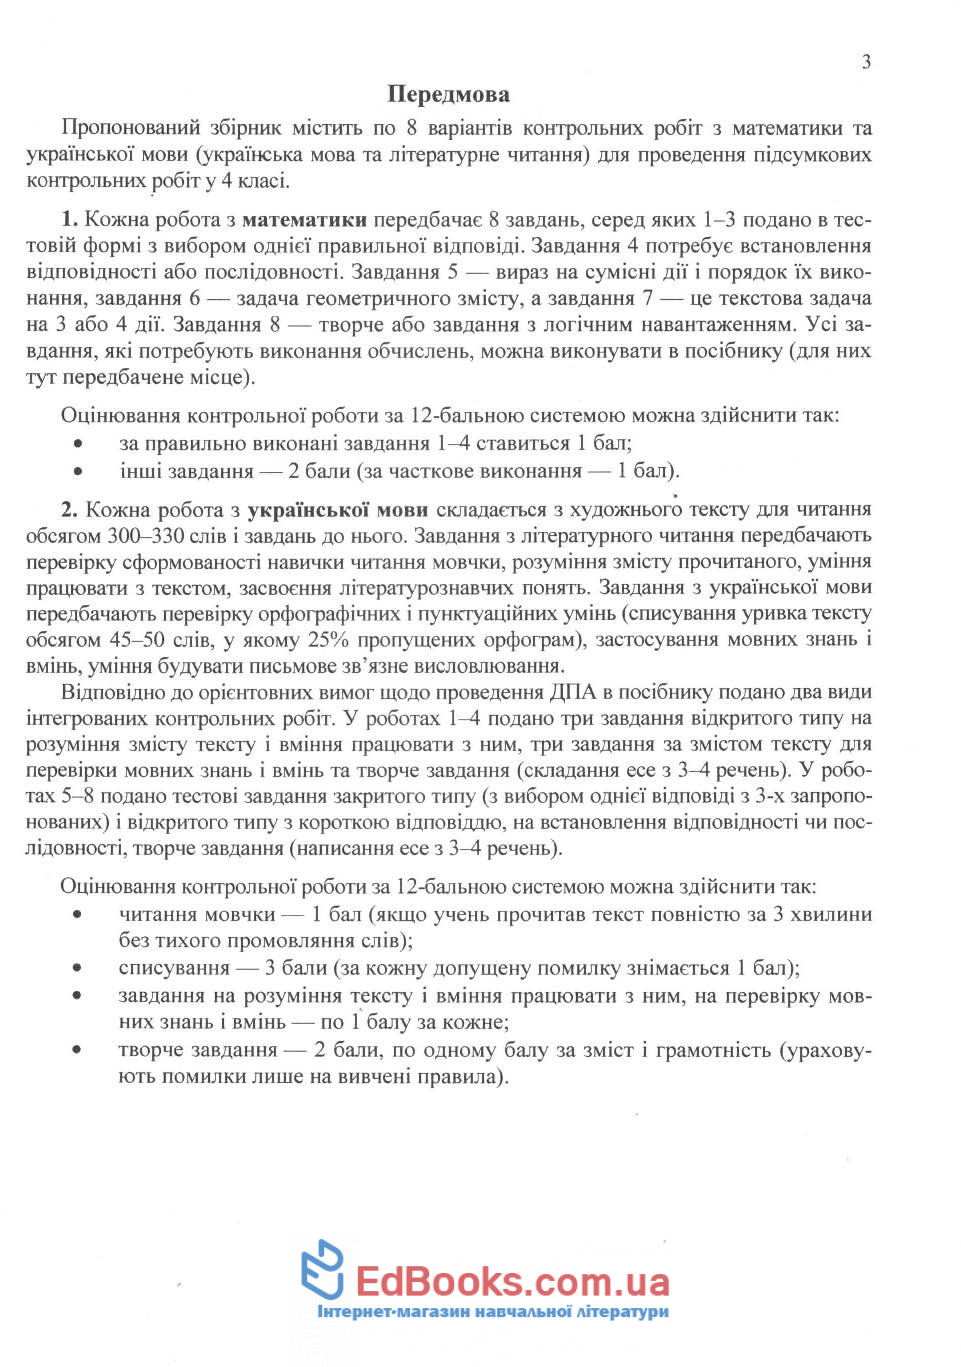 ДПА 2020 4 клас з математики, української мови та читання : купити 3